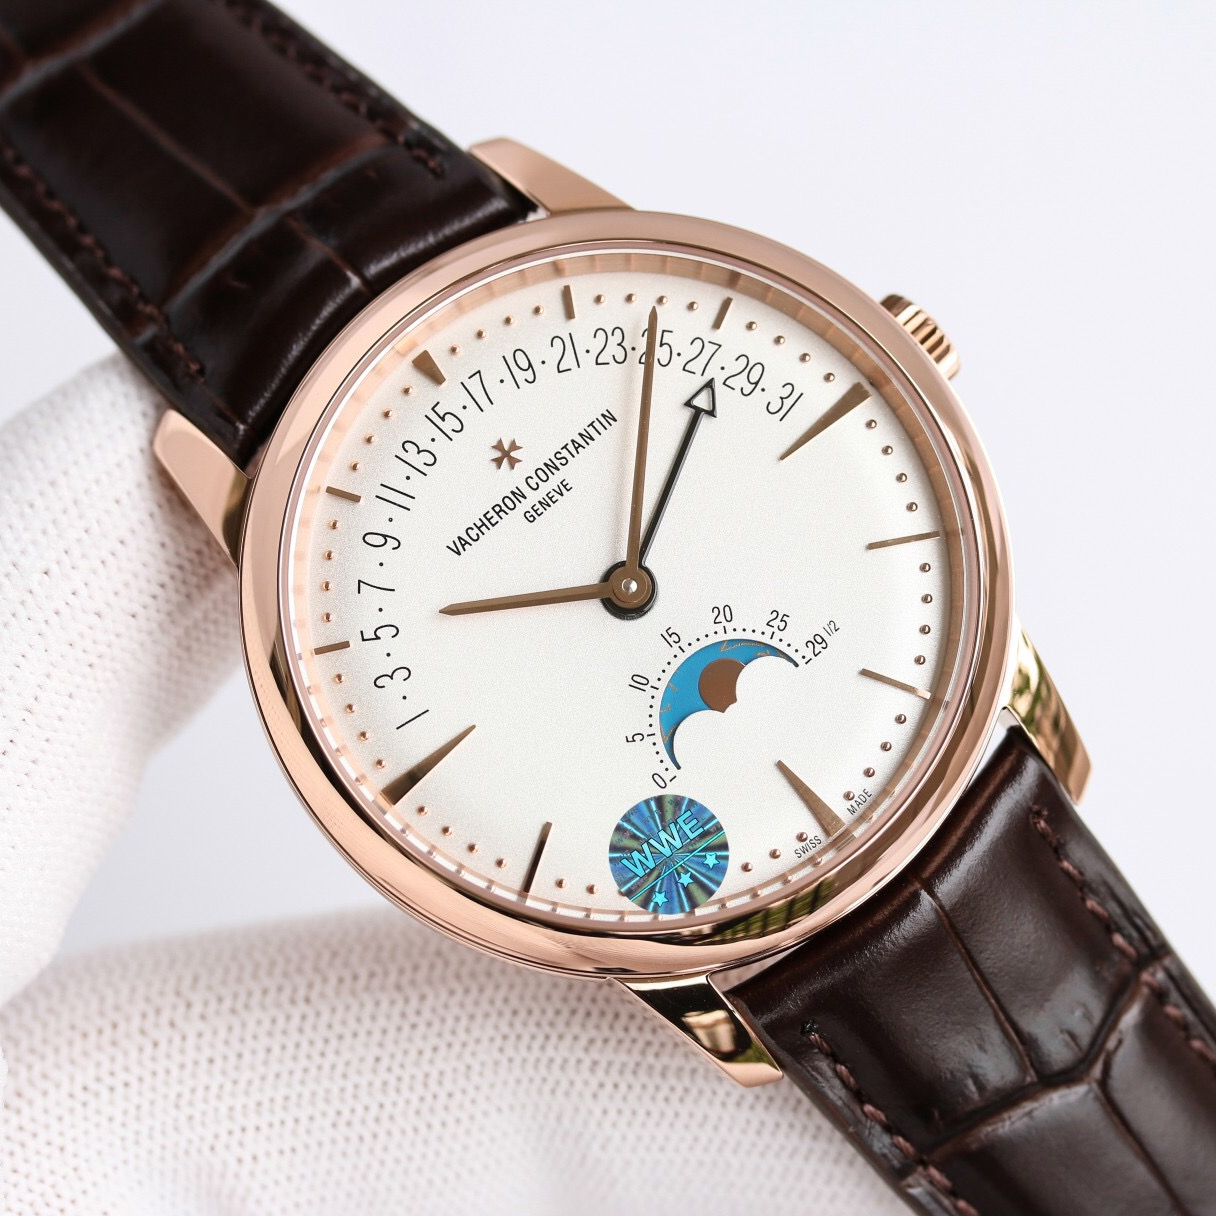 Vacheron constantin 江詩丹頓傳承系列的星辰和逆跳日曆款腕錶